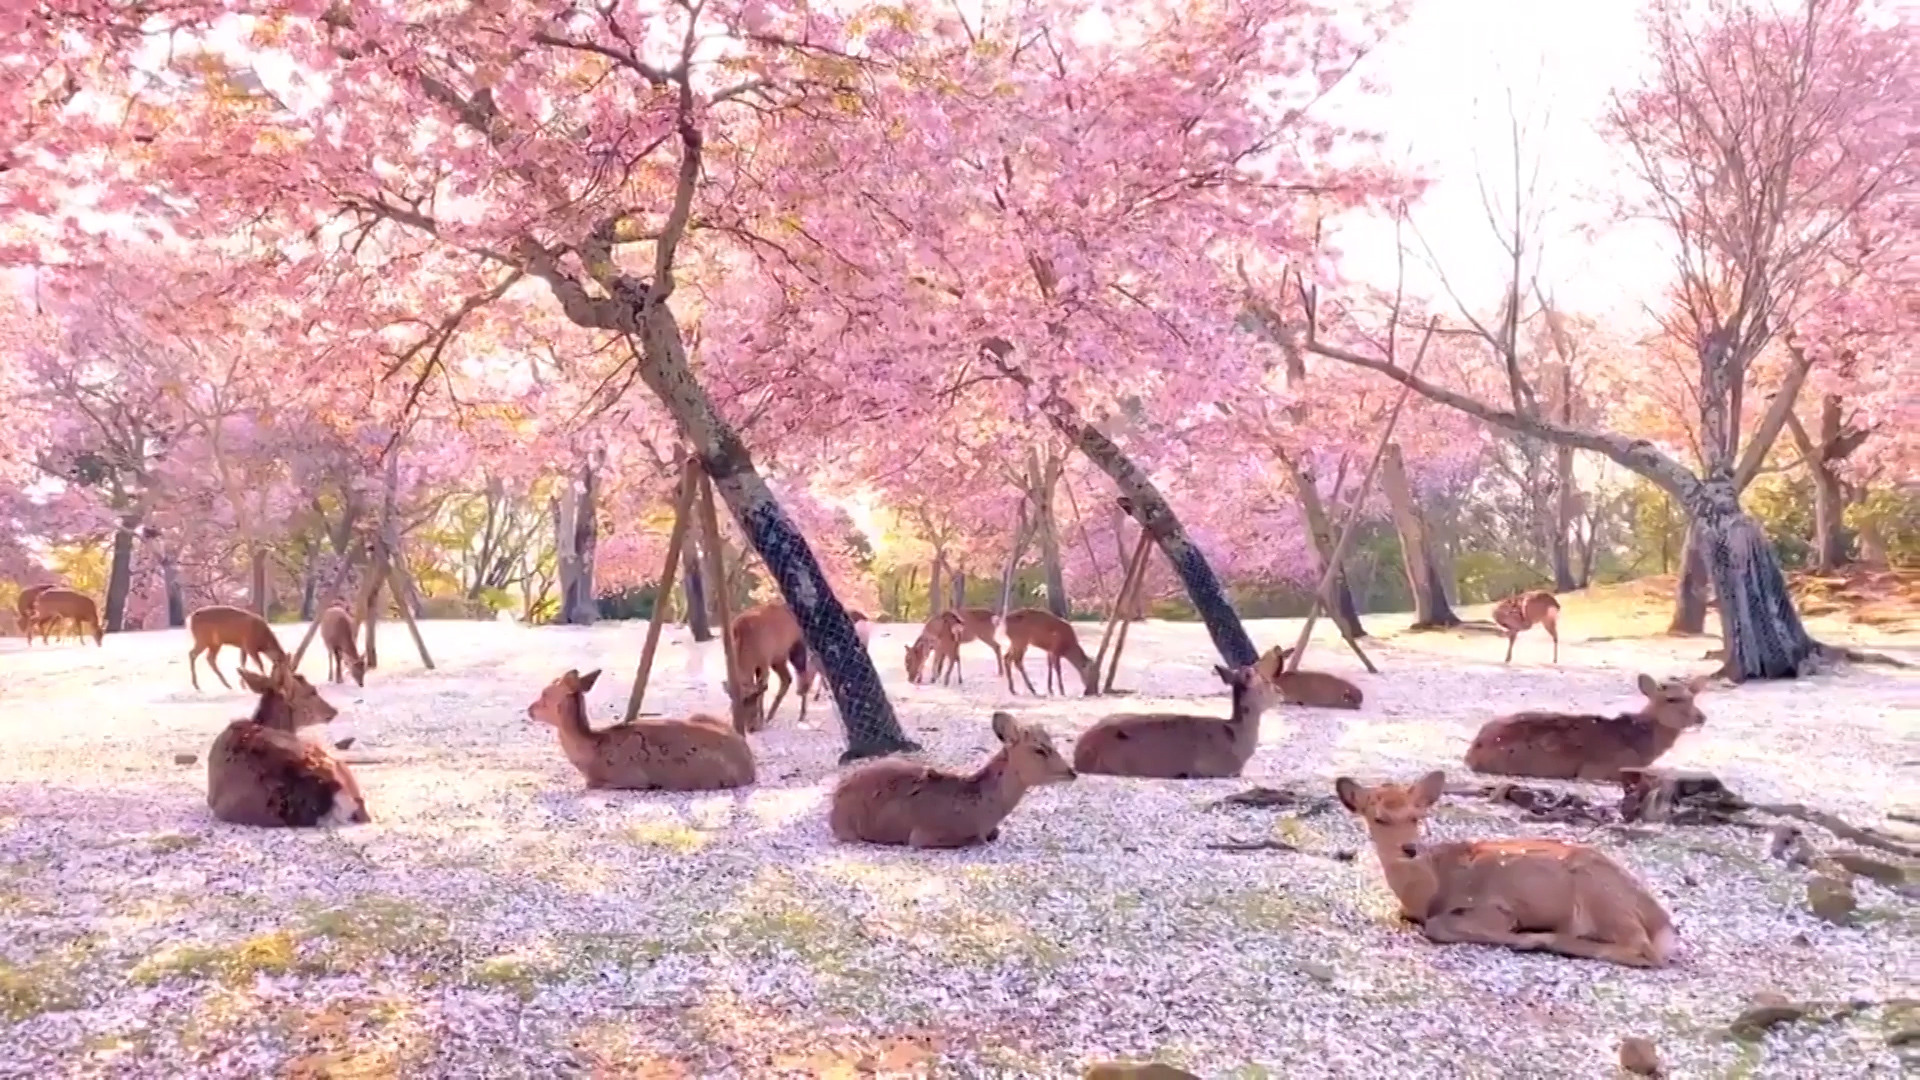  Hermosa postal japonesa, ciervos reposan bajo los cerezos en flor